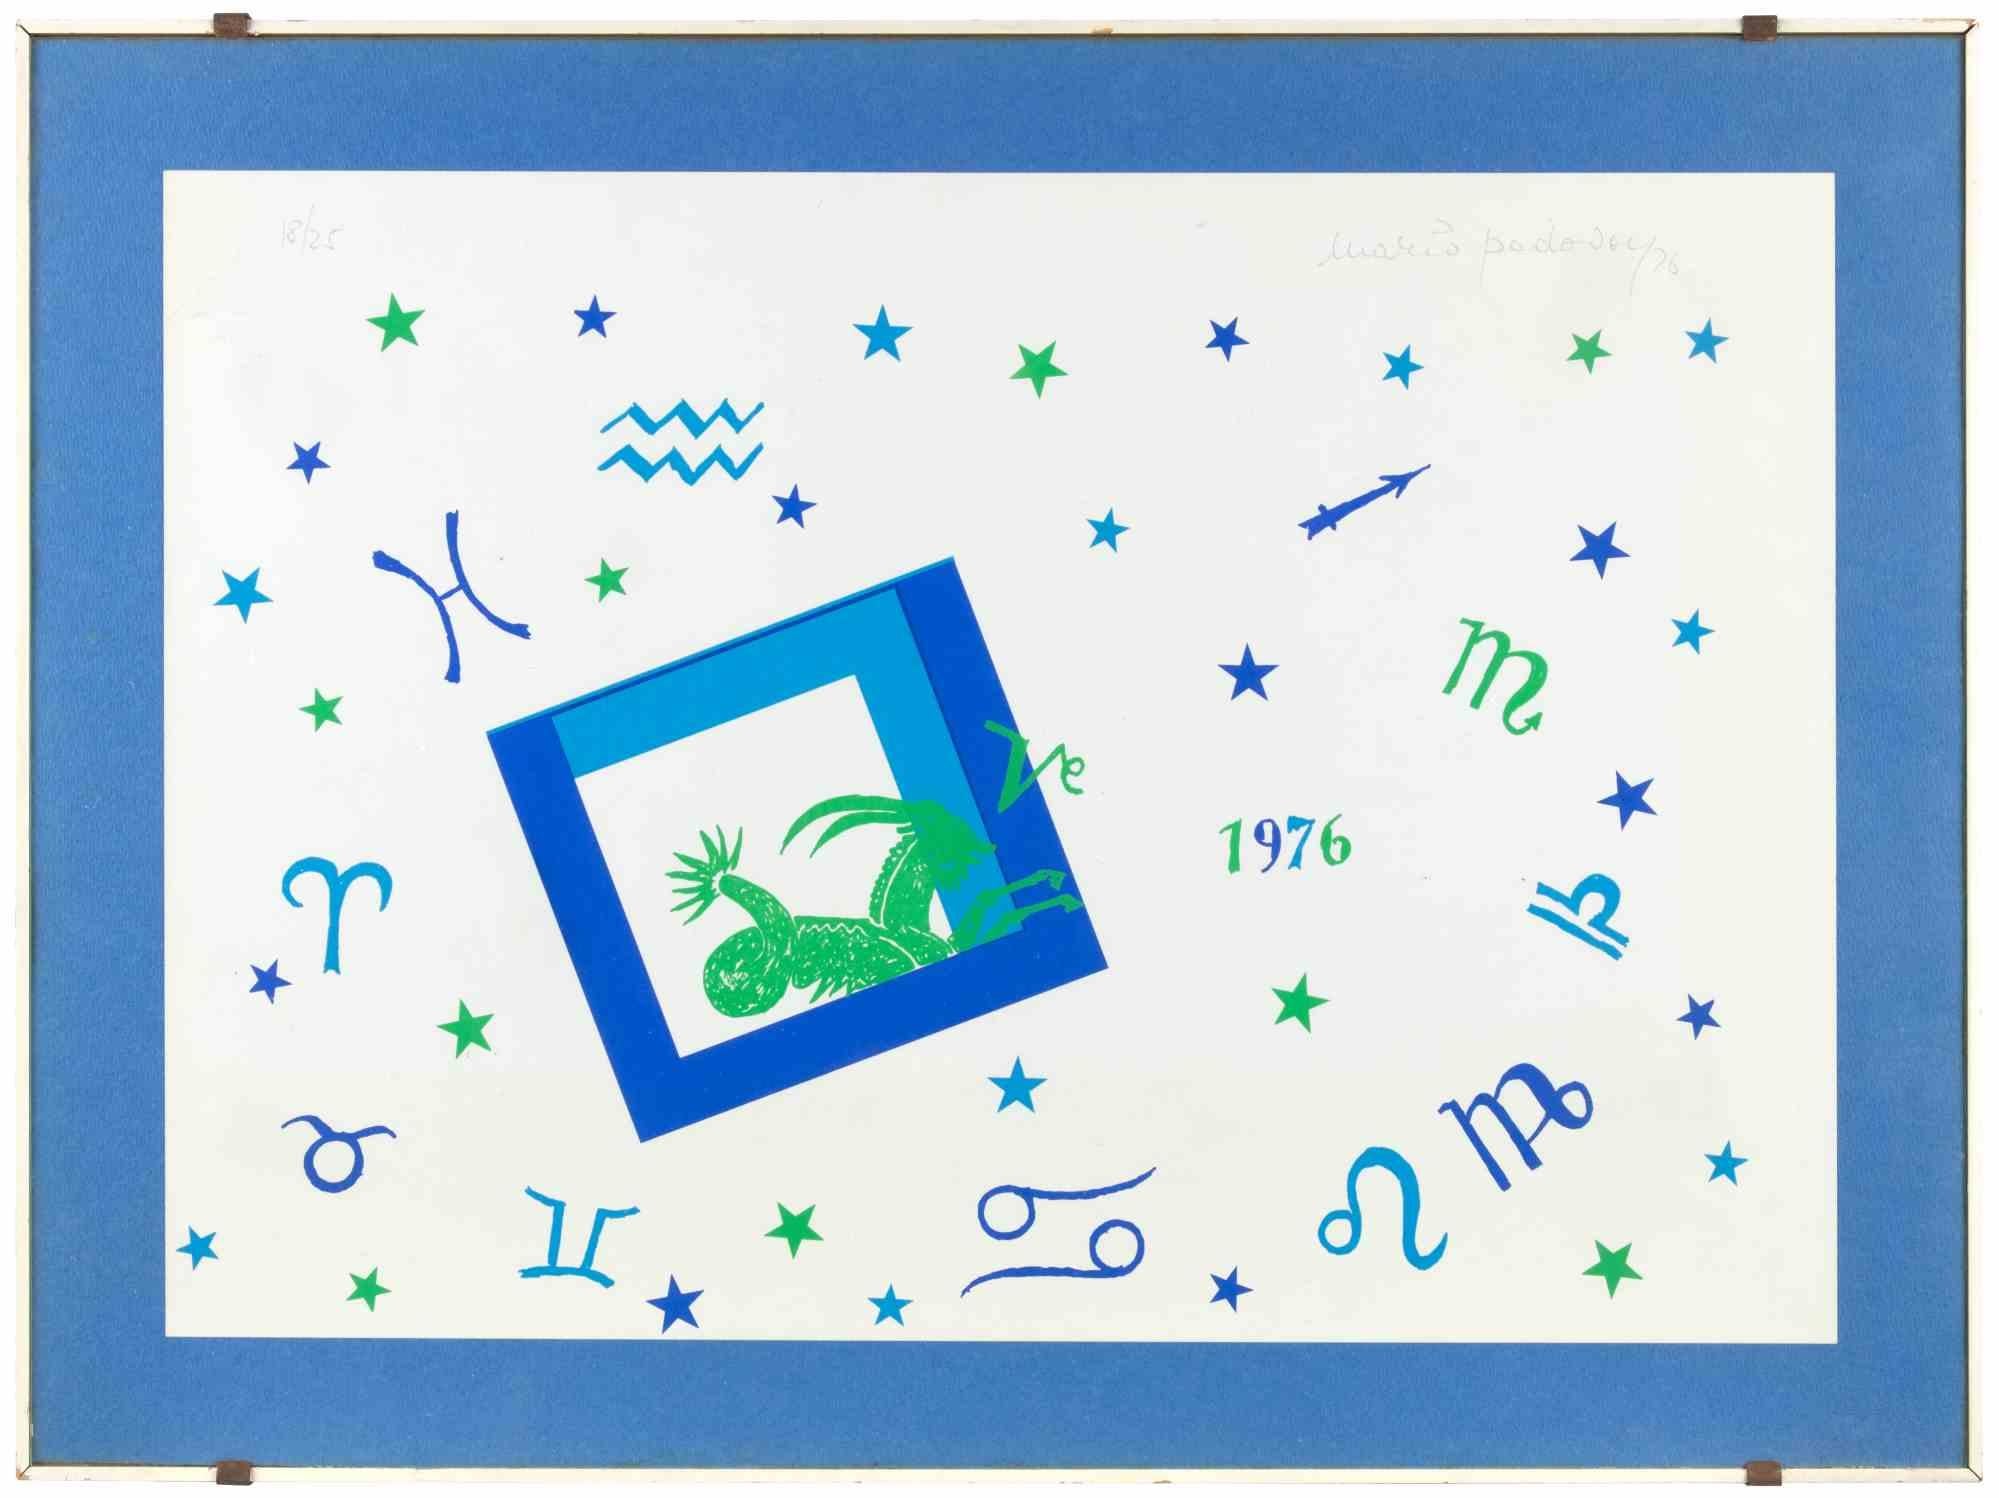 Zodiac est une œuvre d'art contemporain réalisée par Mario Padovan en 1976.

Lithographie en couleurs mélangées.

Signé et daté à la main dans la marge supérieure.

Numéroté dans la marge supérieure gauche. Édition de 18/25.